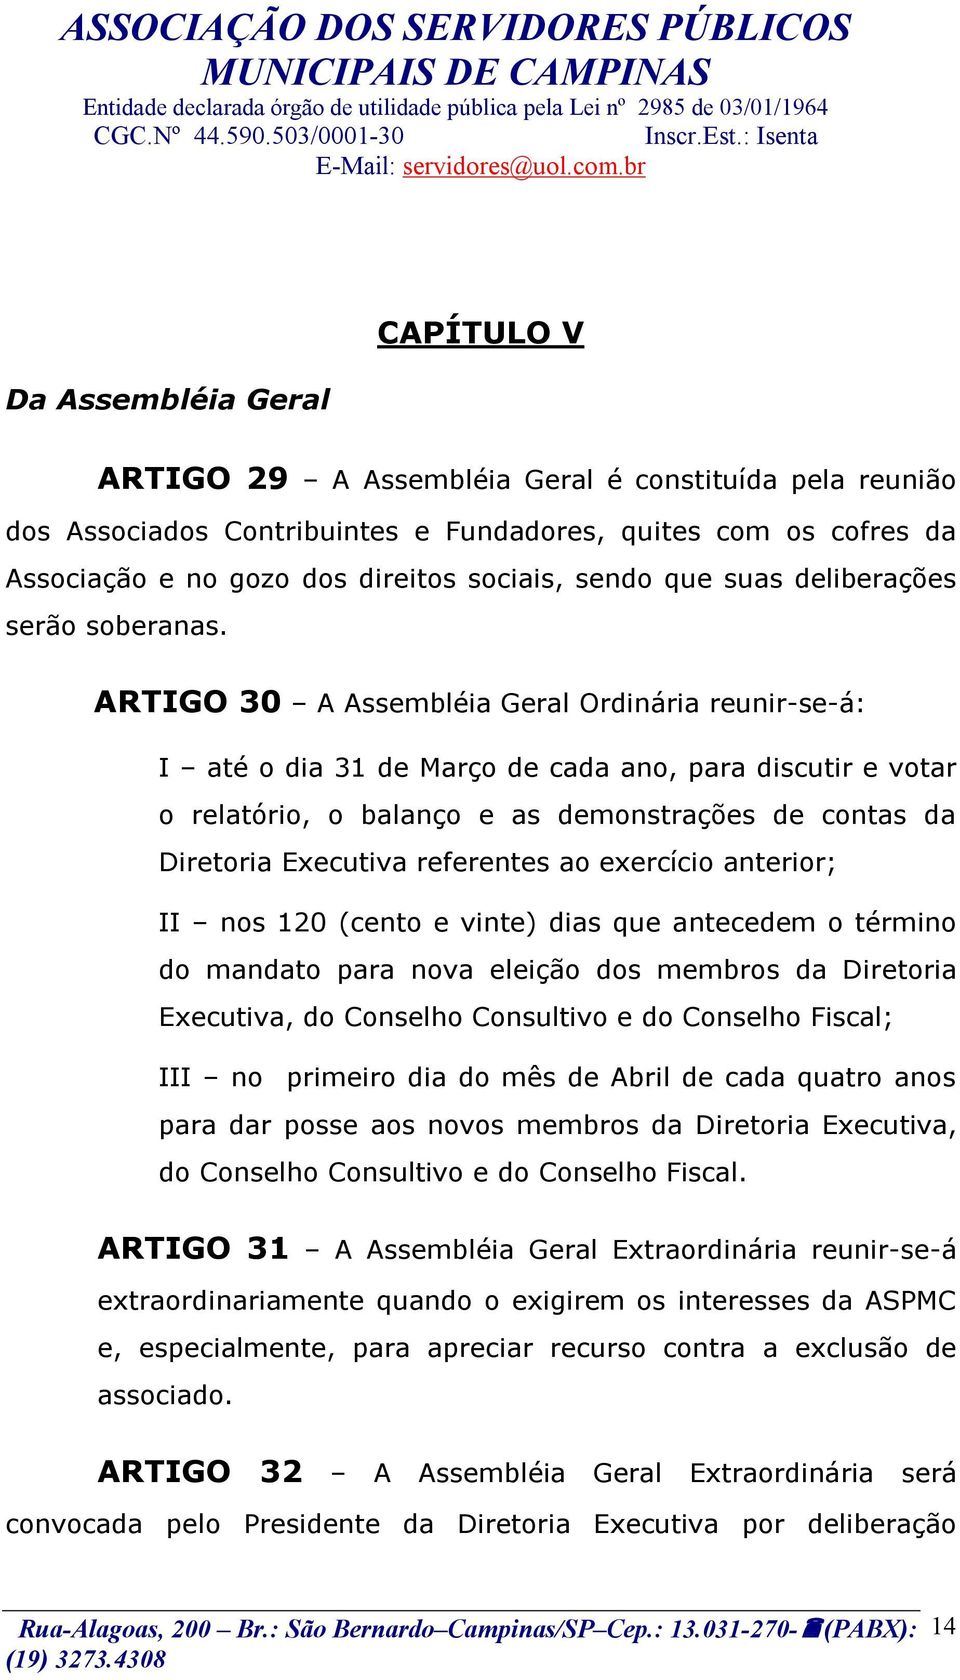 ARTIGO 30 A Assembléia Geral Ordinária reunir-se-á: I até o dia 31 de Março de cada ano, para discutir e votar o relatório, o balanço e as demonstrações de contas da Diretoria Executiva referentes ao